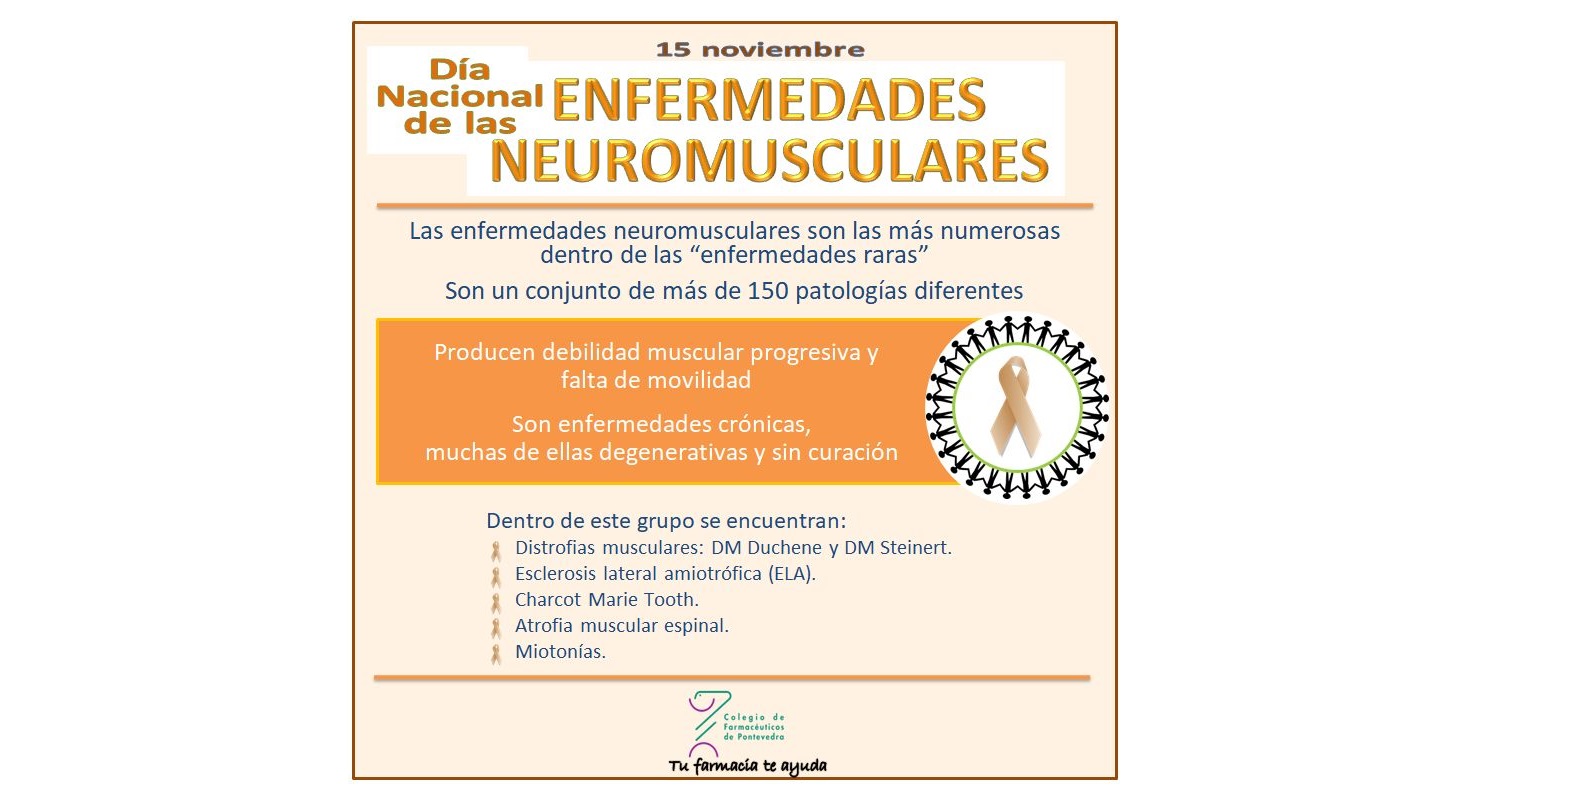 Día Nacional de las Enfermedades Neuromusculares 2017 - Colegio de Farmacéuticos de Pontevedra